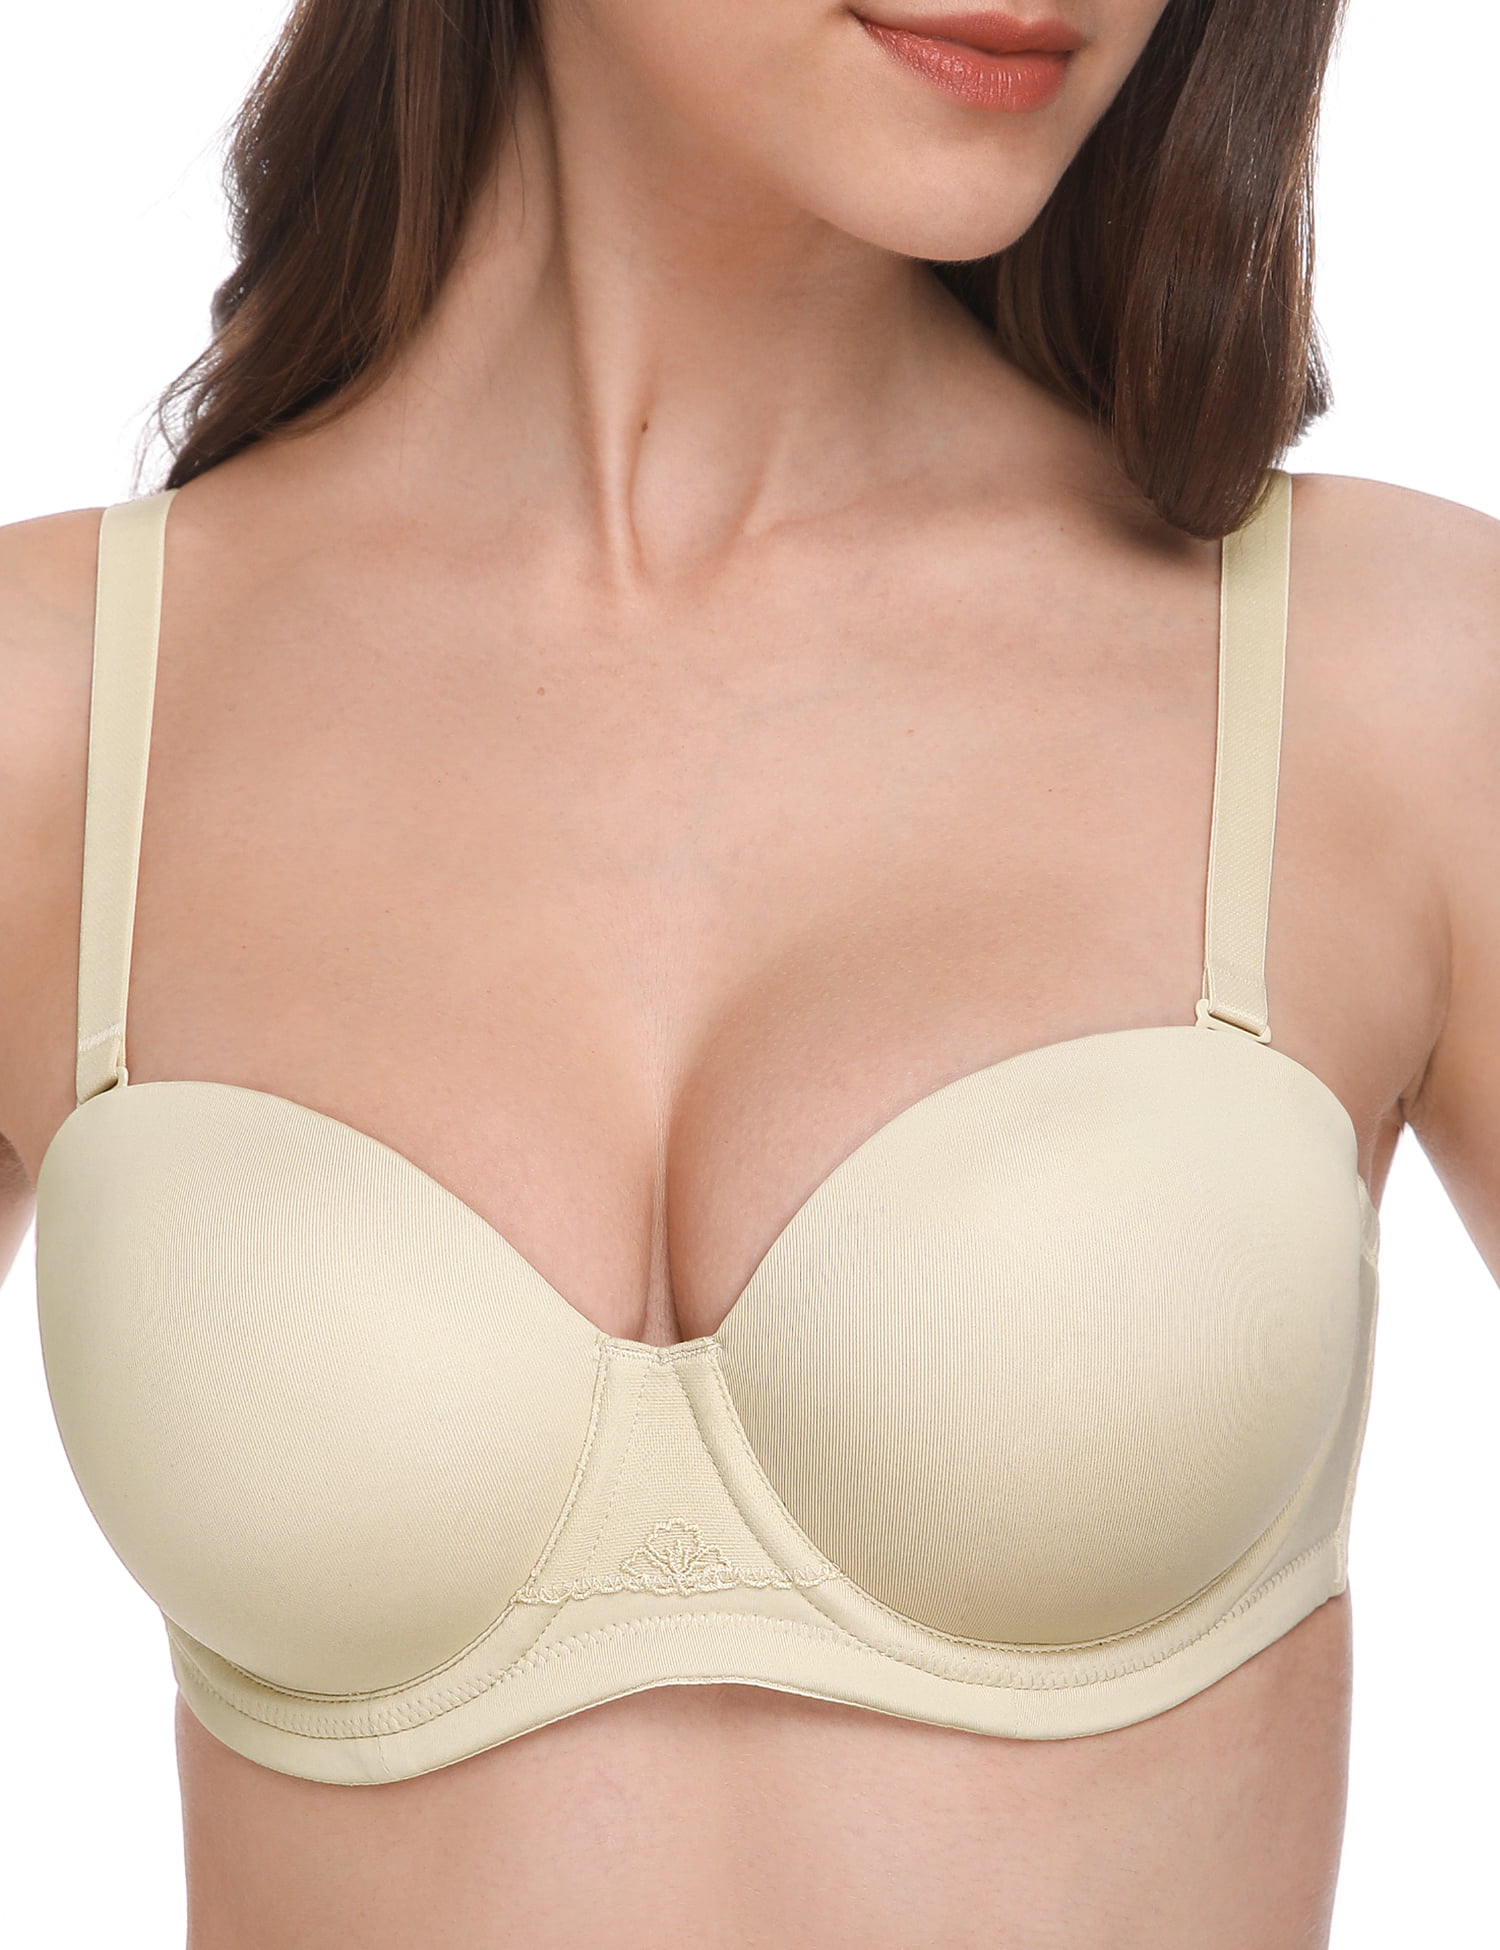 Avenue Body  Women's Plus Size Post Surgery Bra - Beige - 36dd : Target